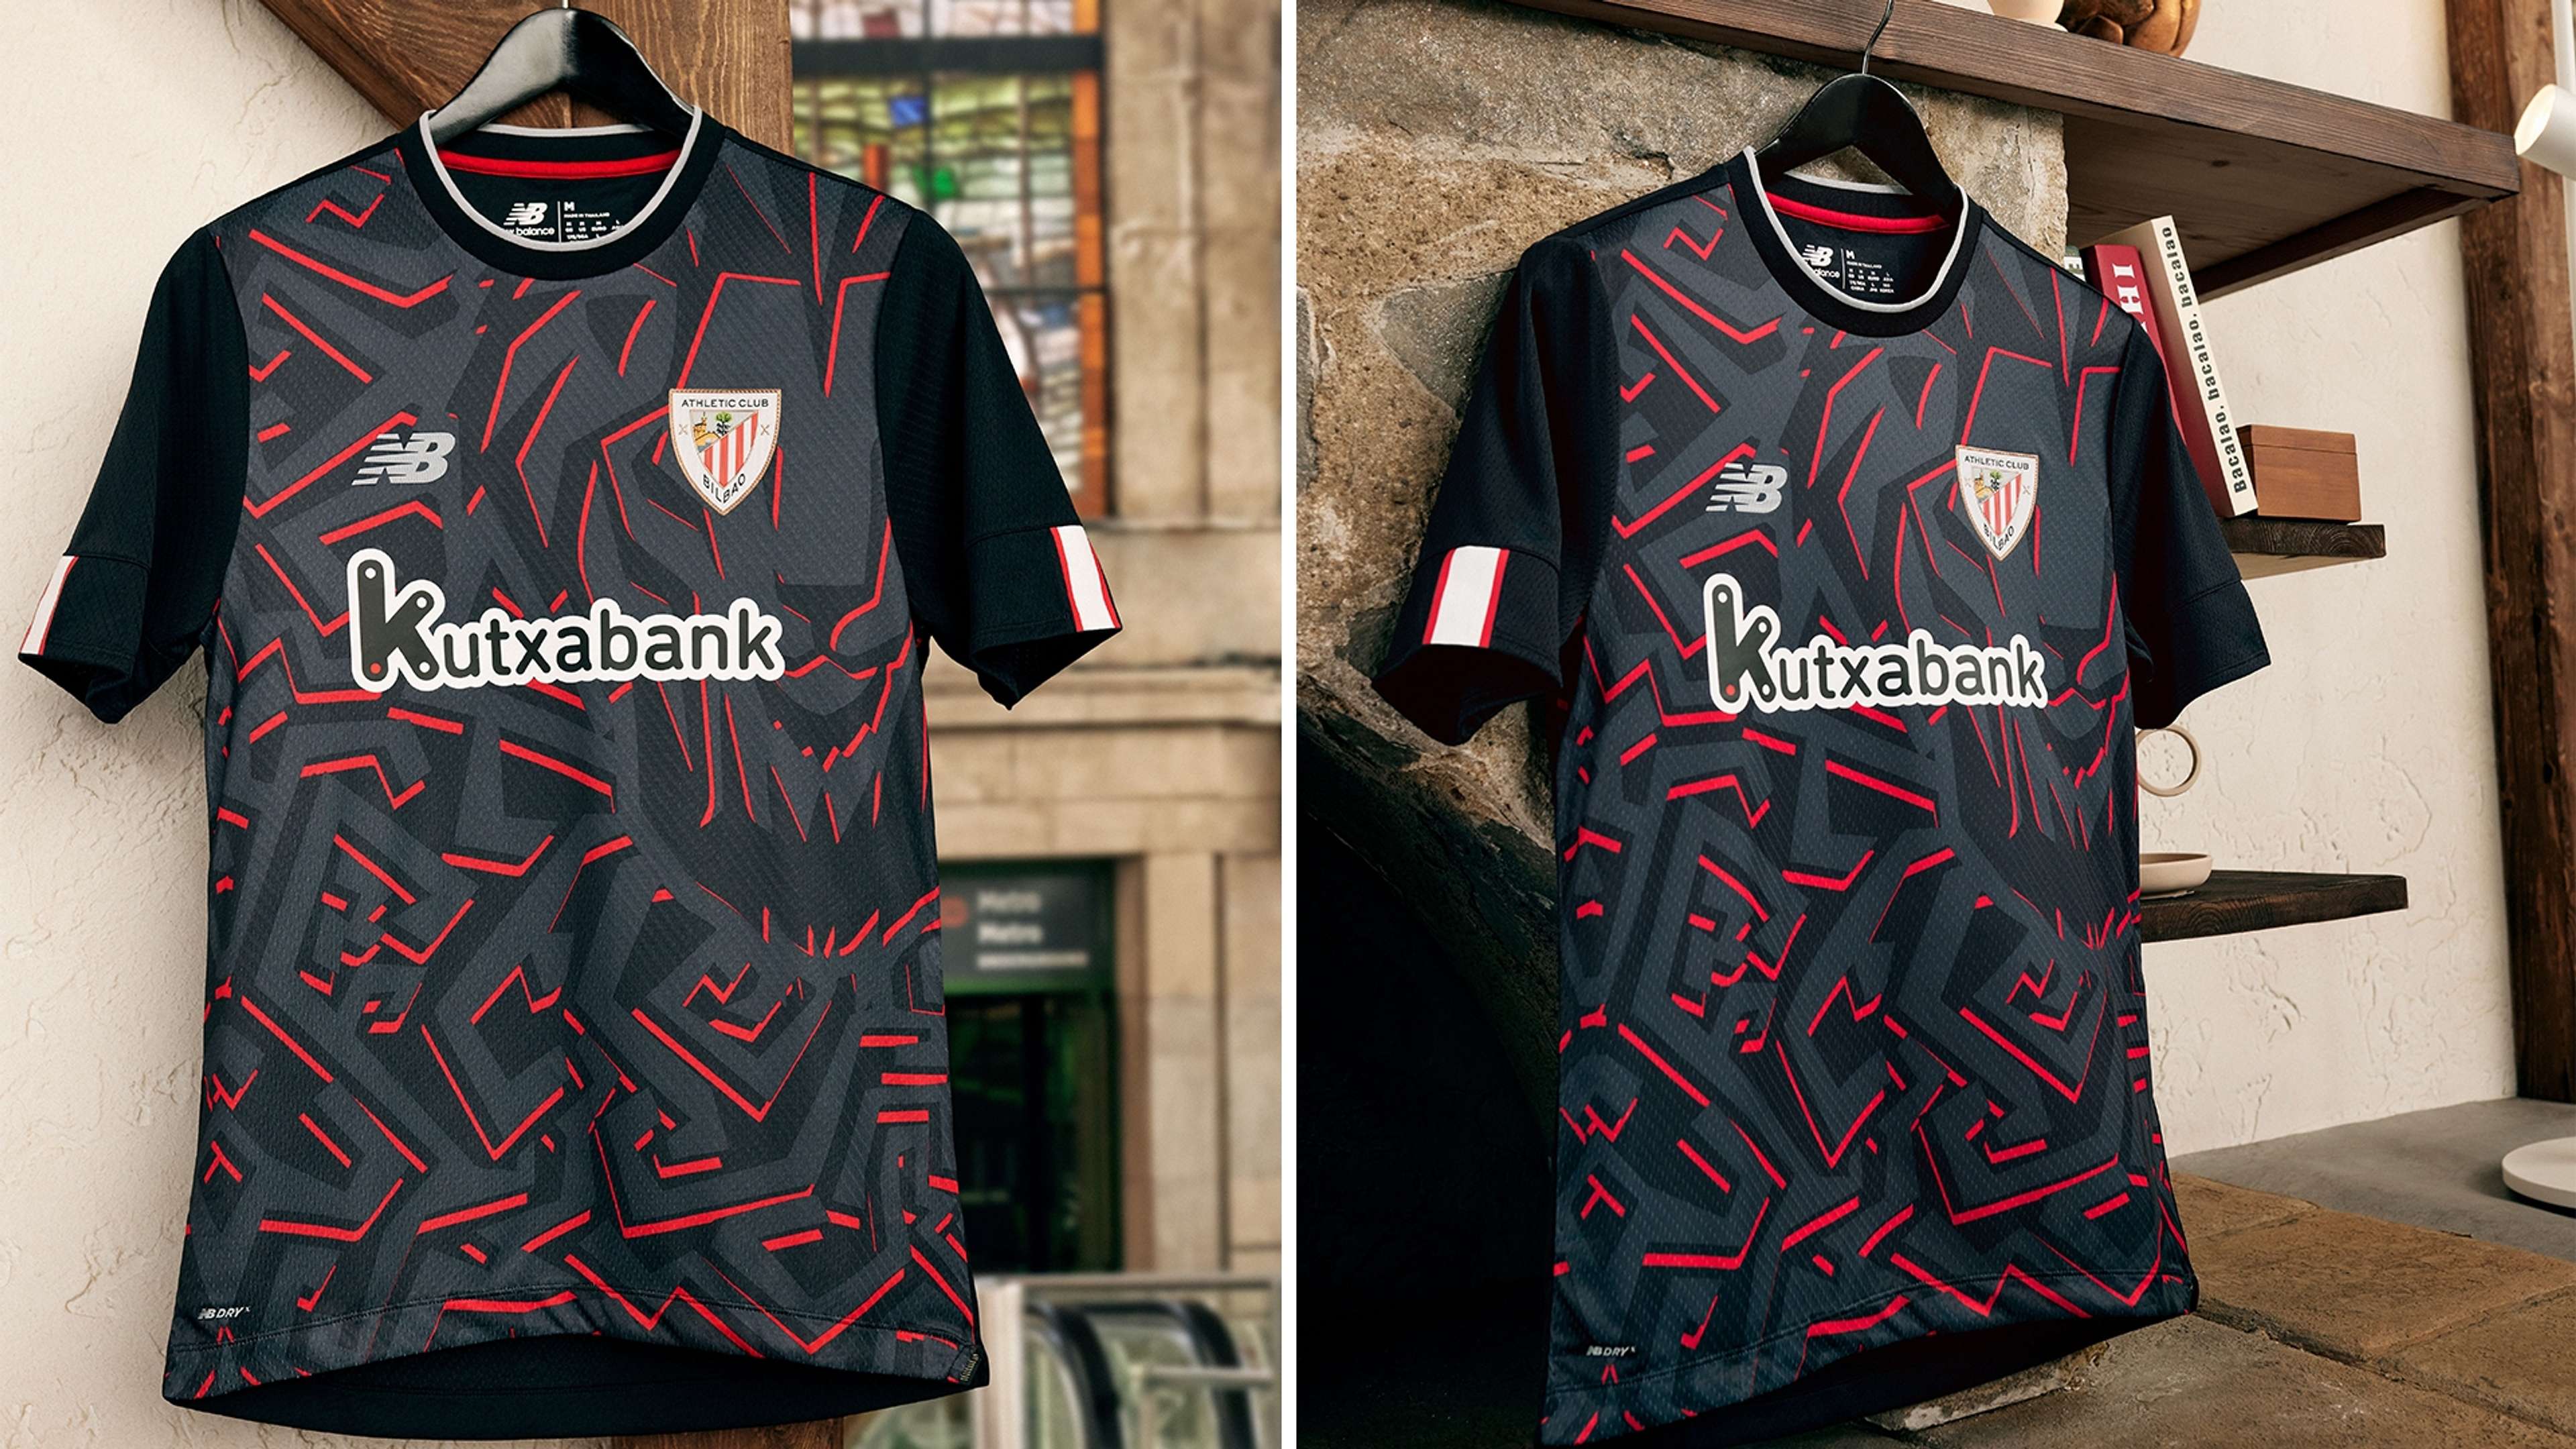 Athletic Bilbao’s kit